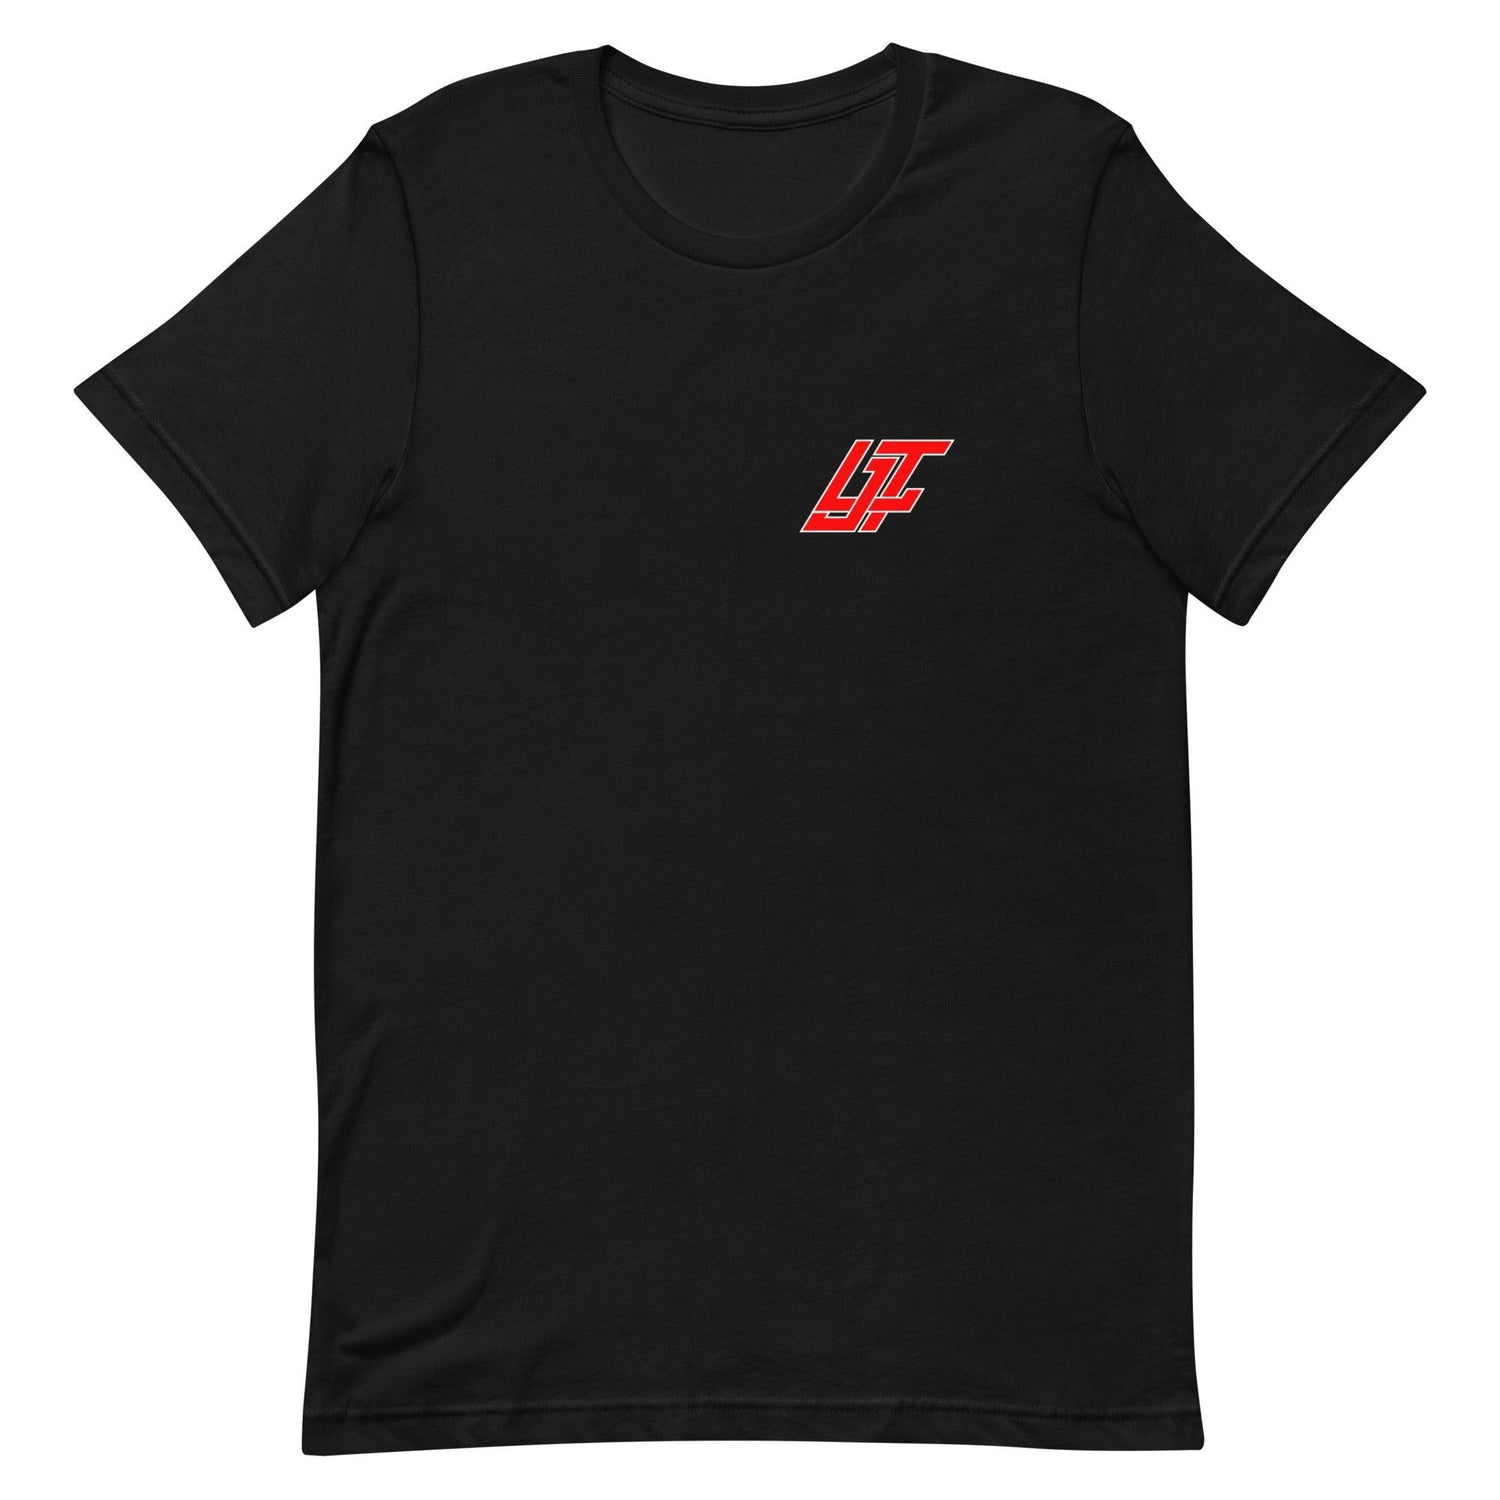 LJ Thomas "LJT" t-shirt - Fan Arch